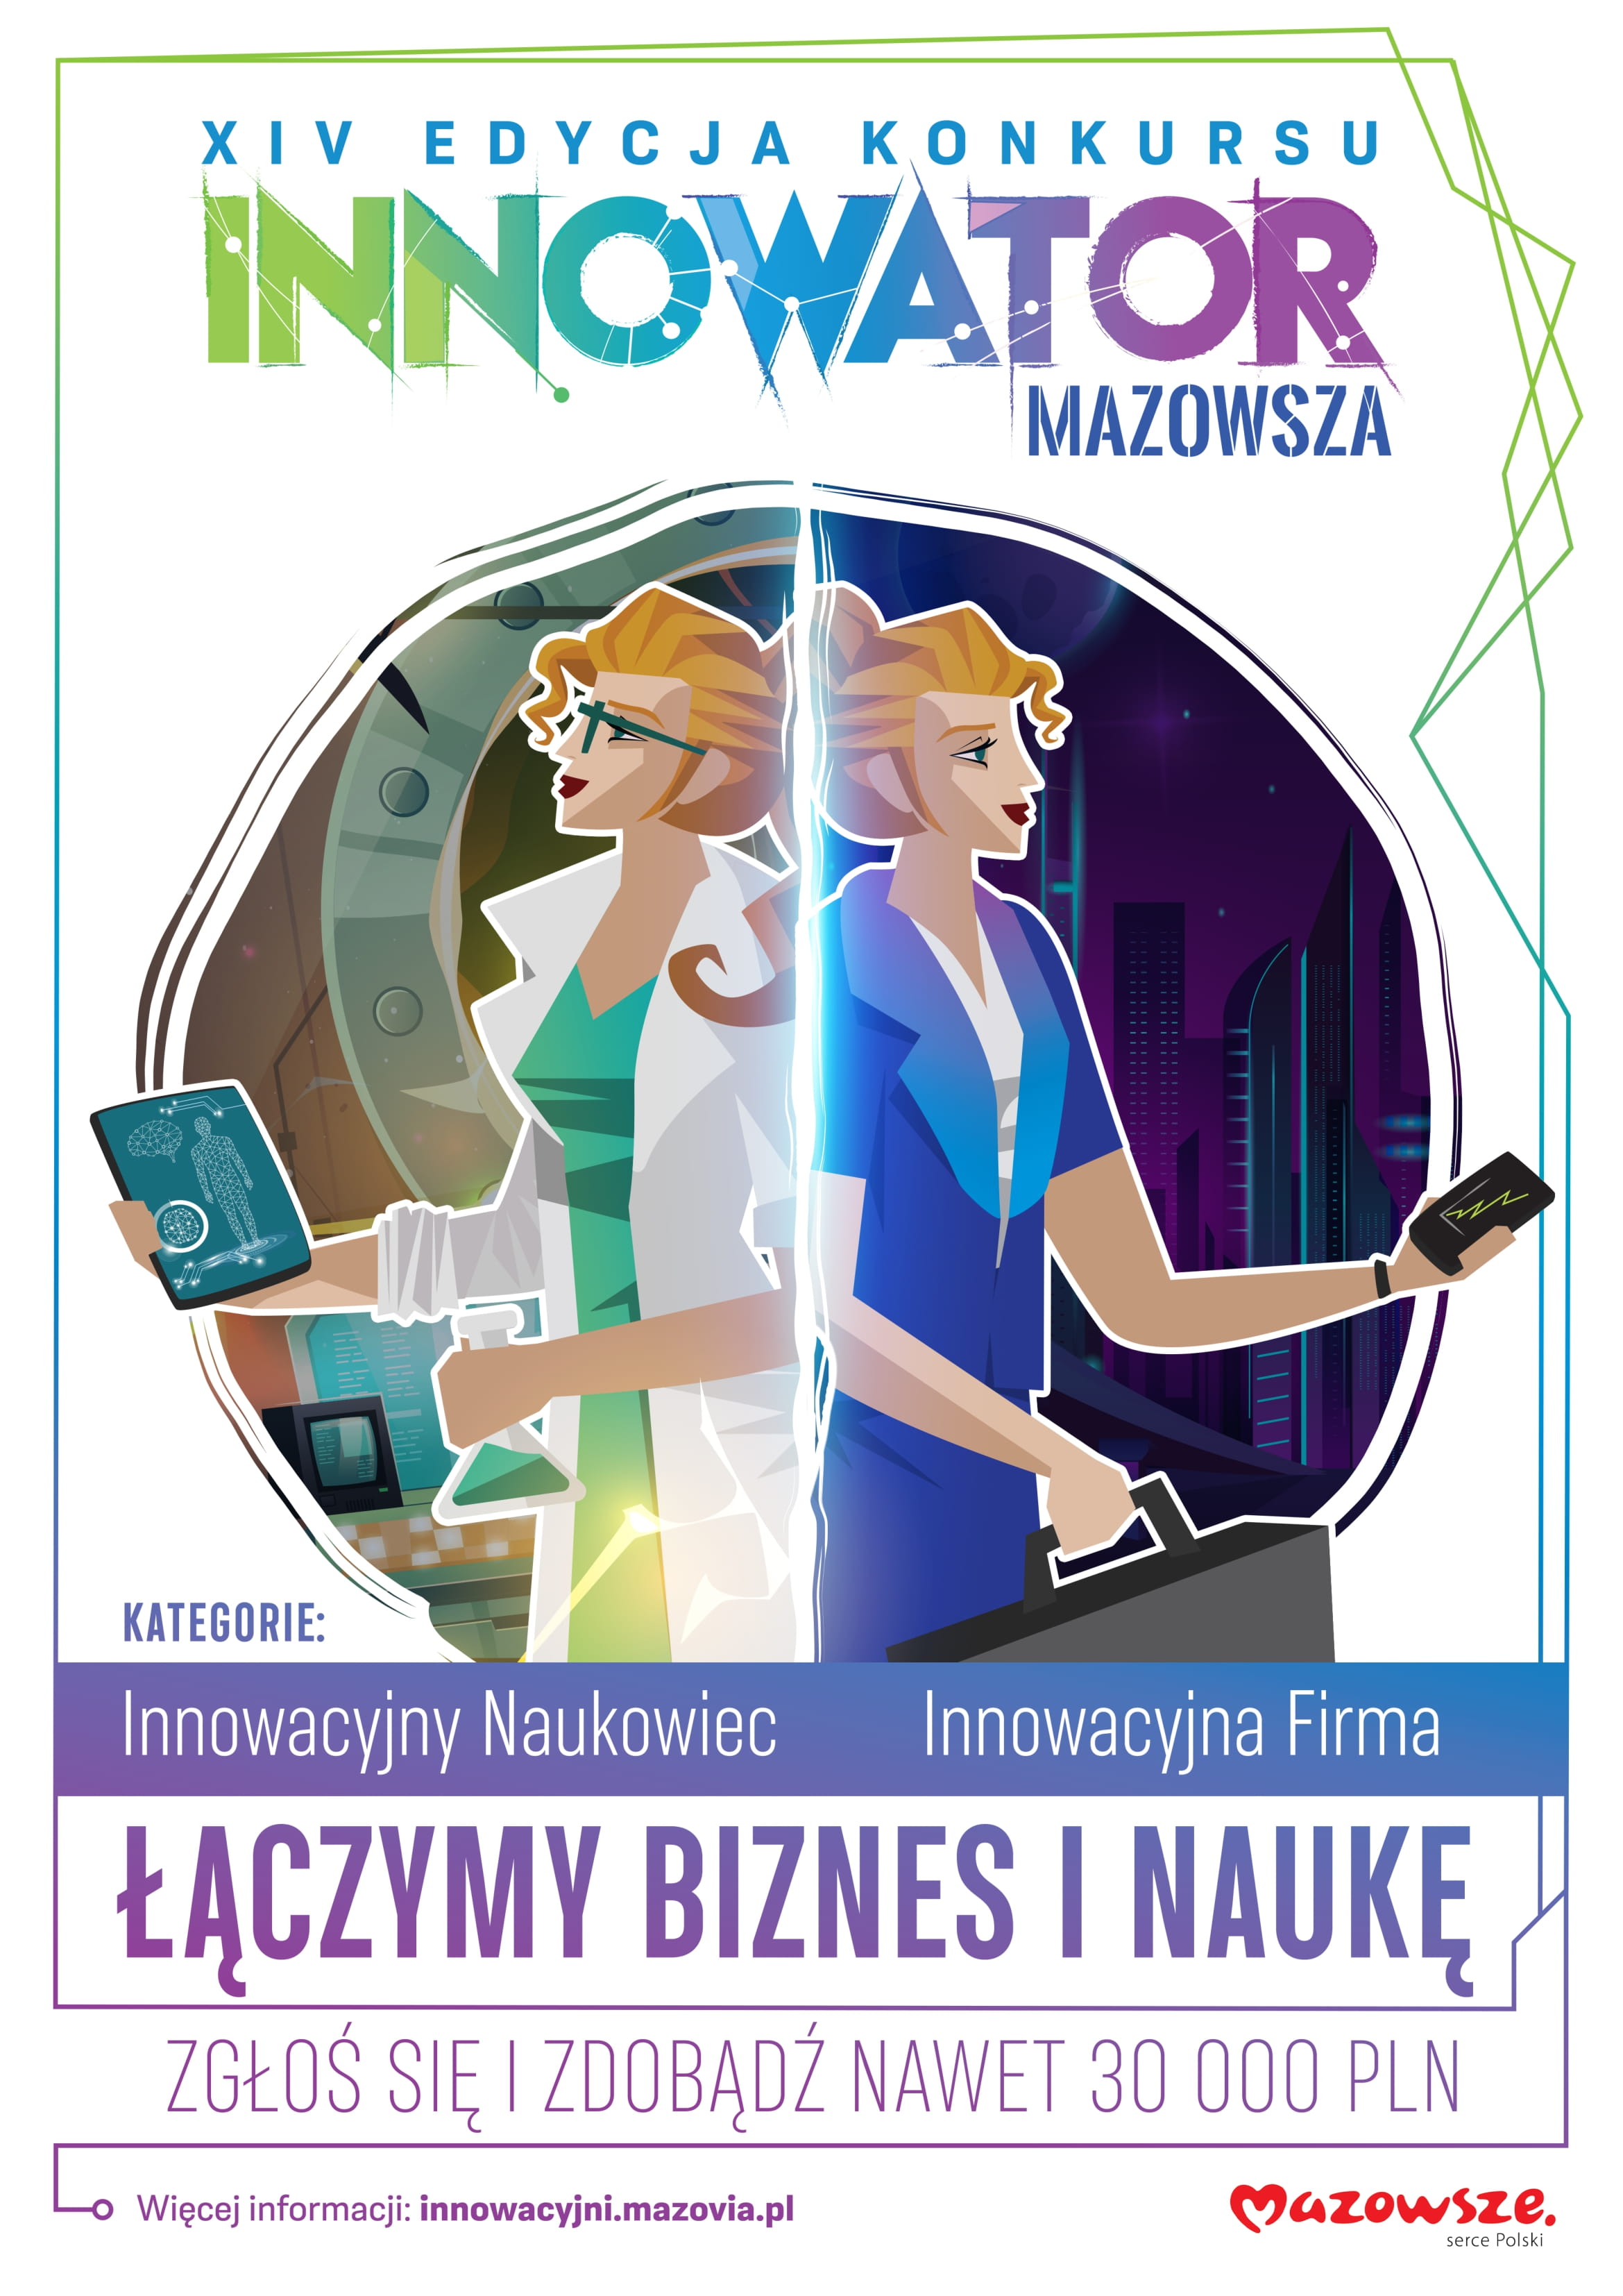 Innowator Mazowsza